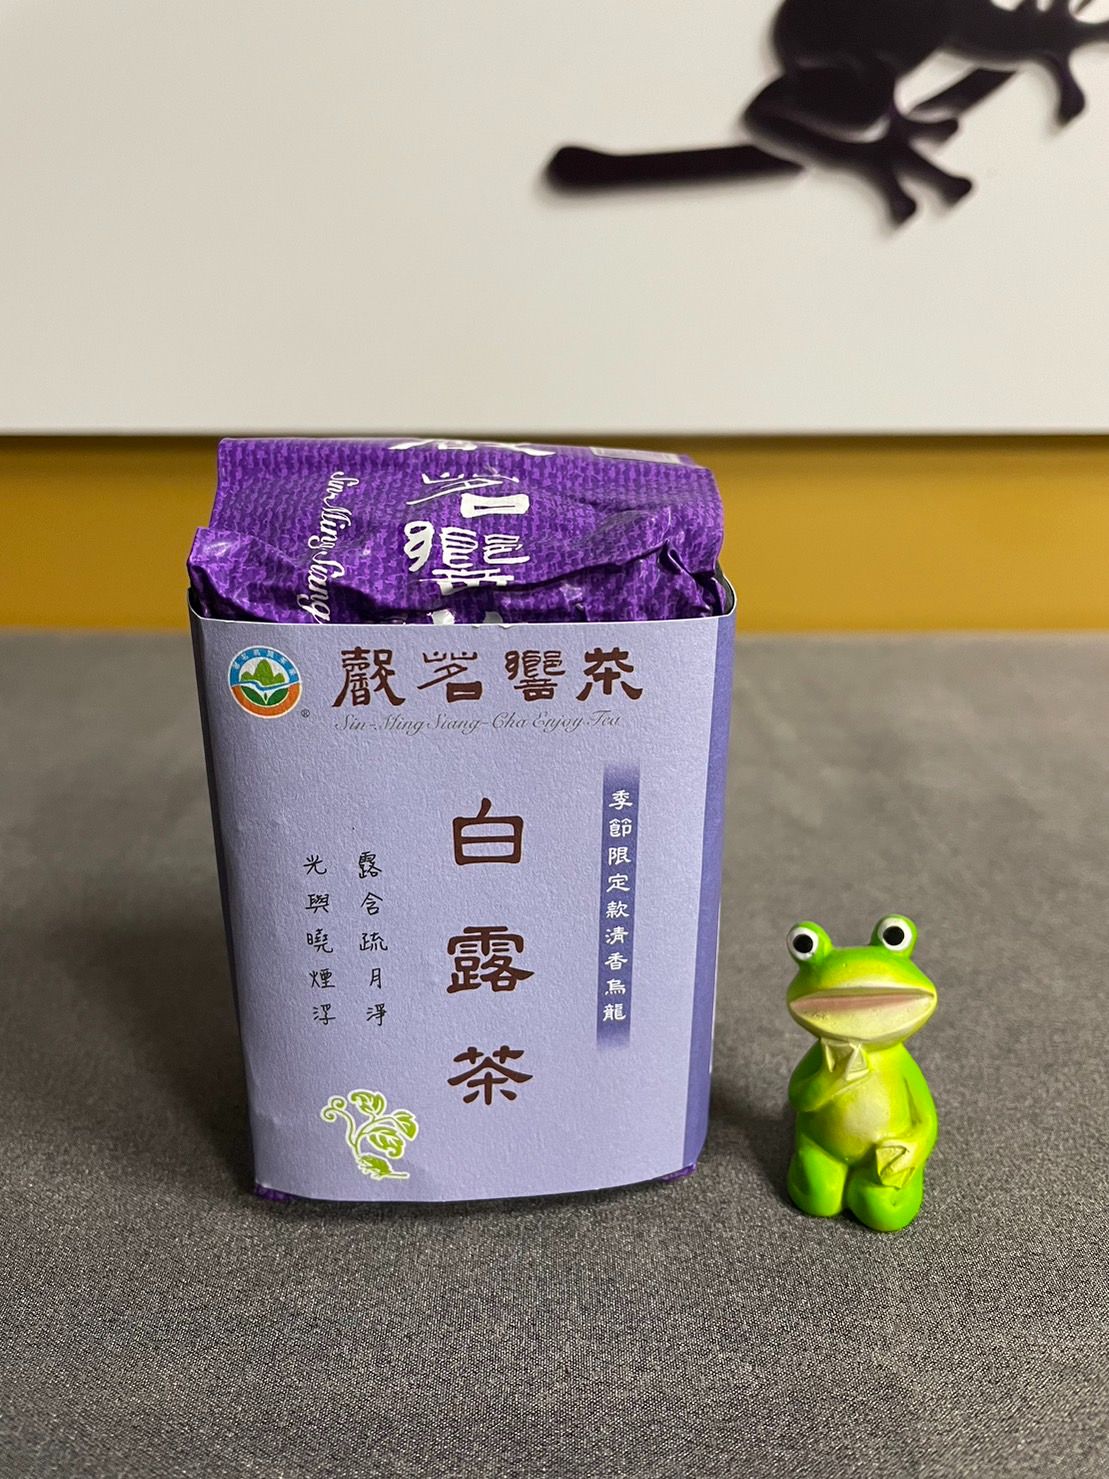 白露茶-清香季節限定款-杉林溪產銷產地驗證第一品牌-特優五星衛生安全製茶廠監製